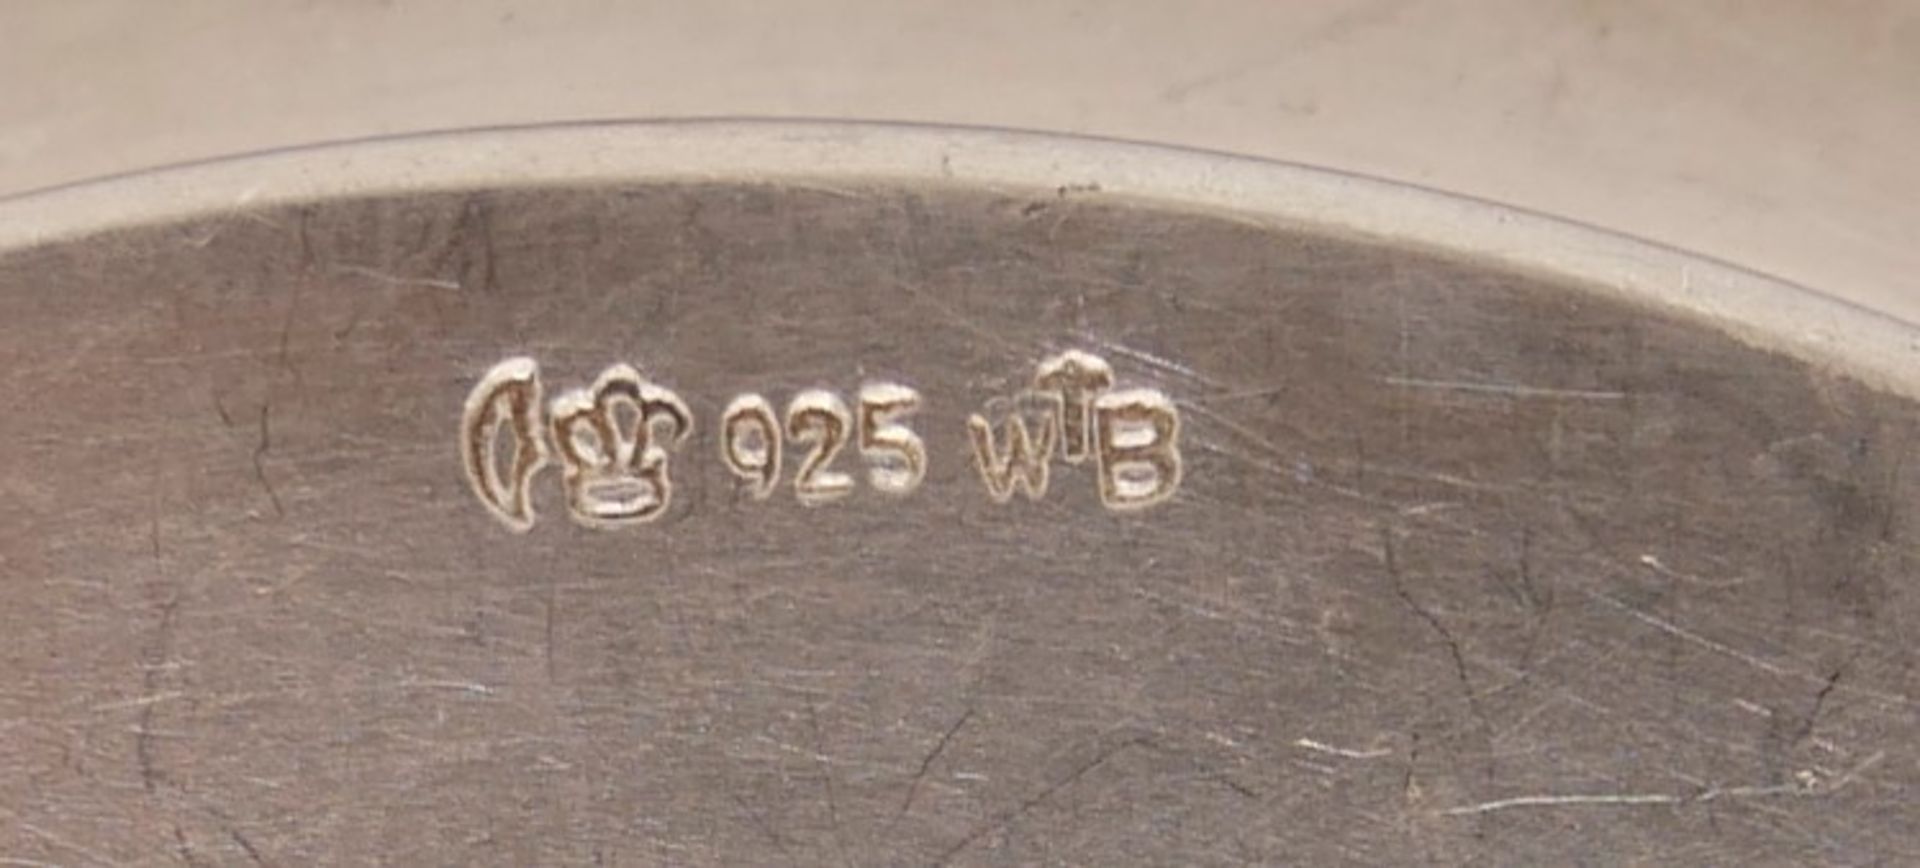 kleine Silberschale, gepunzt 925 WTB, Durchmesser ca. 11,5 cm, Gewicht ca. 80 g. - Image 3 of 3